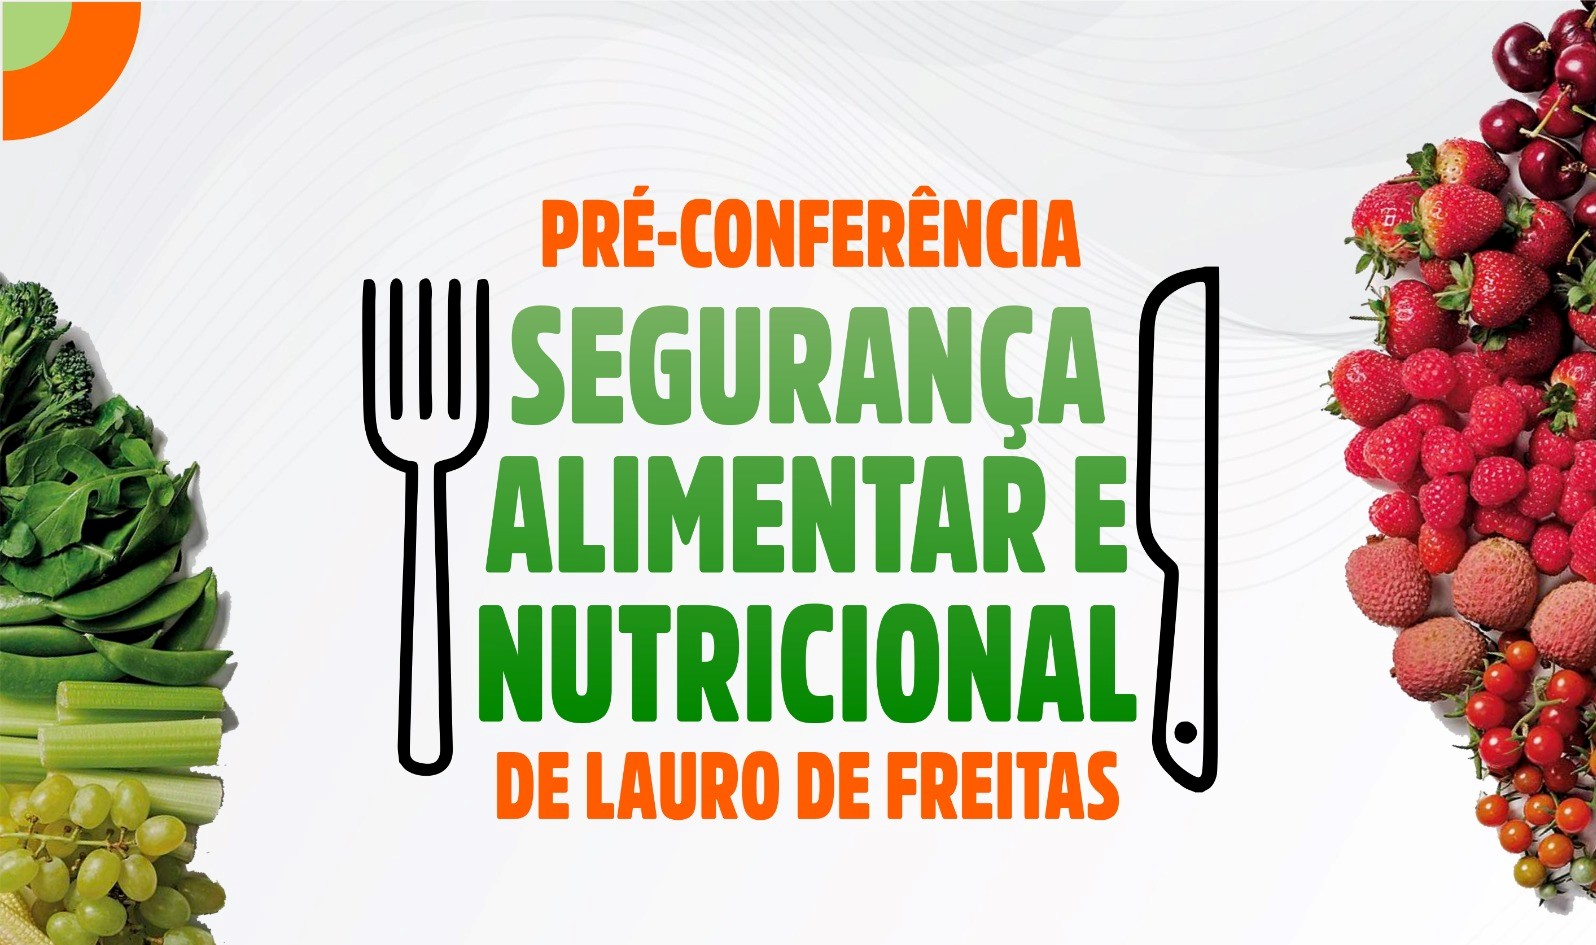 Lauro de Freitas inicia ciclo de pr�-confer�ncias de Seguran�a Alimentar e Nutricional nesta ter�a-feira (15)